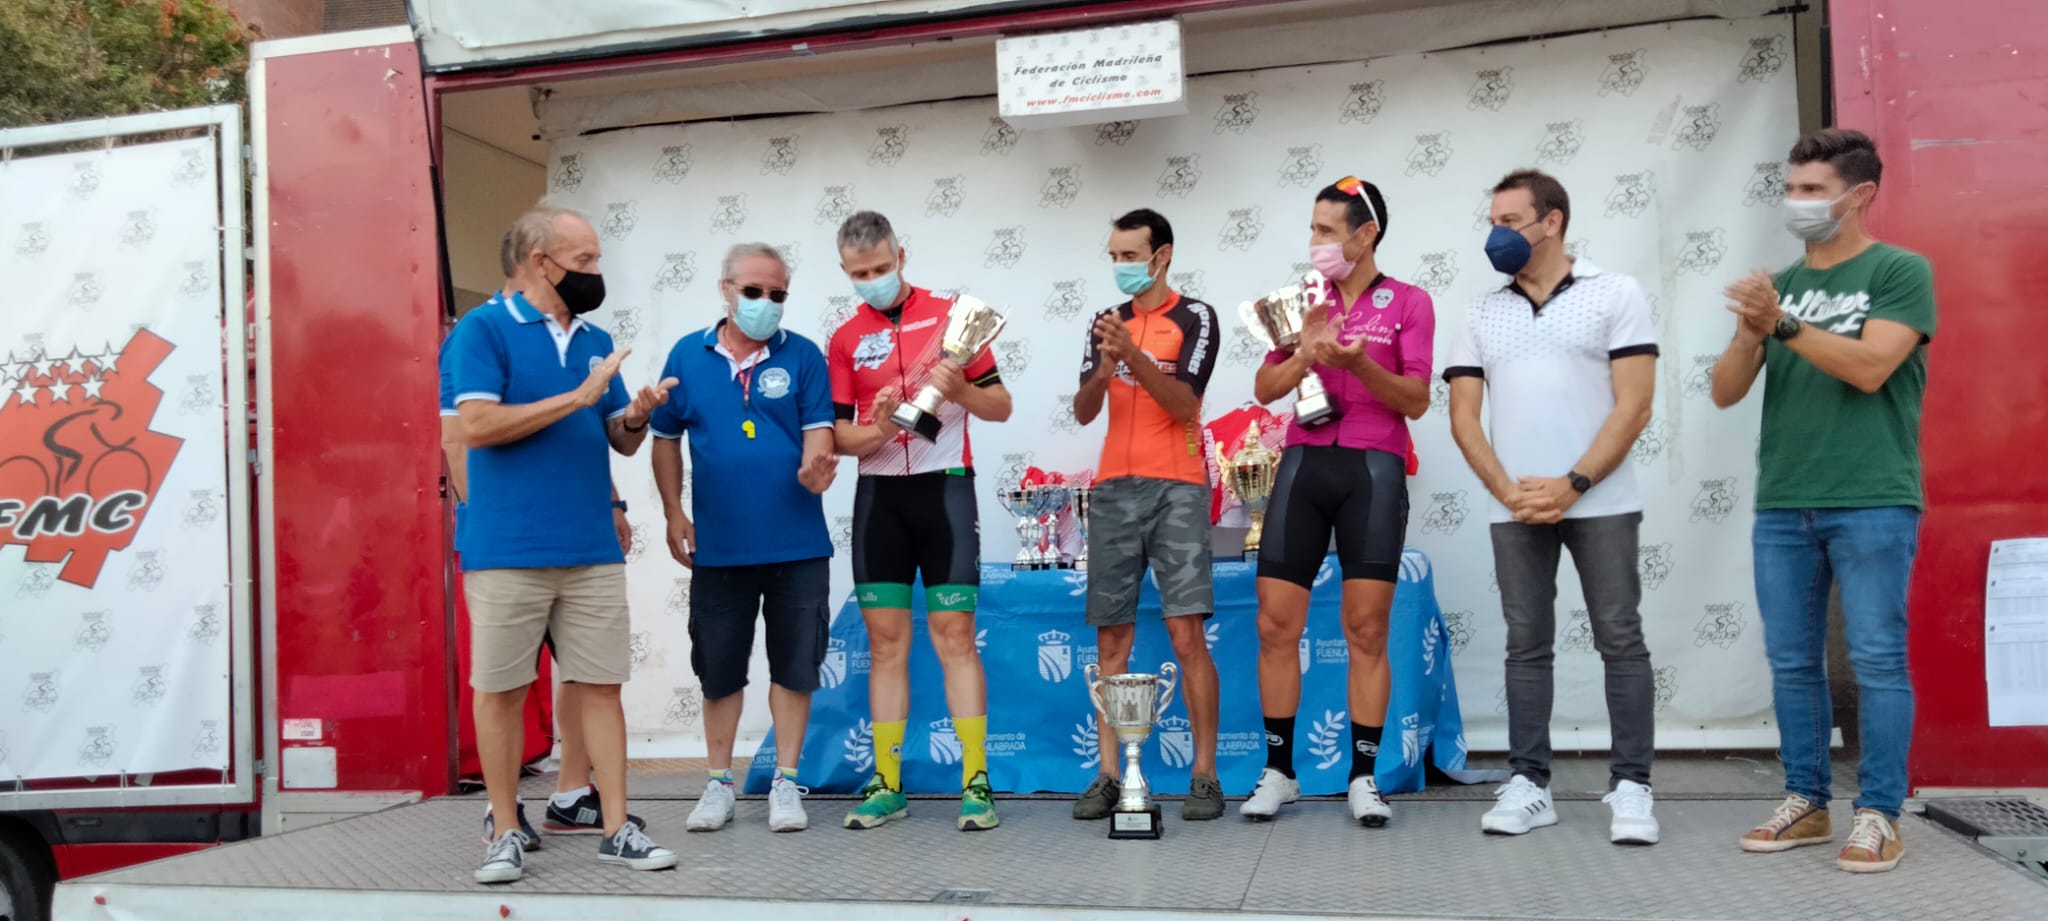 El XXVI Trofeo Fiestas de Fuenlabrada registró las victorias de José Antonio Cavero y de Aitor Lucas